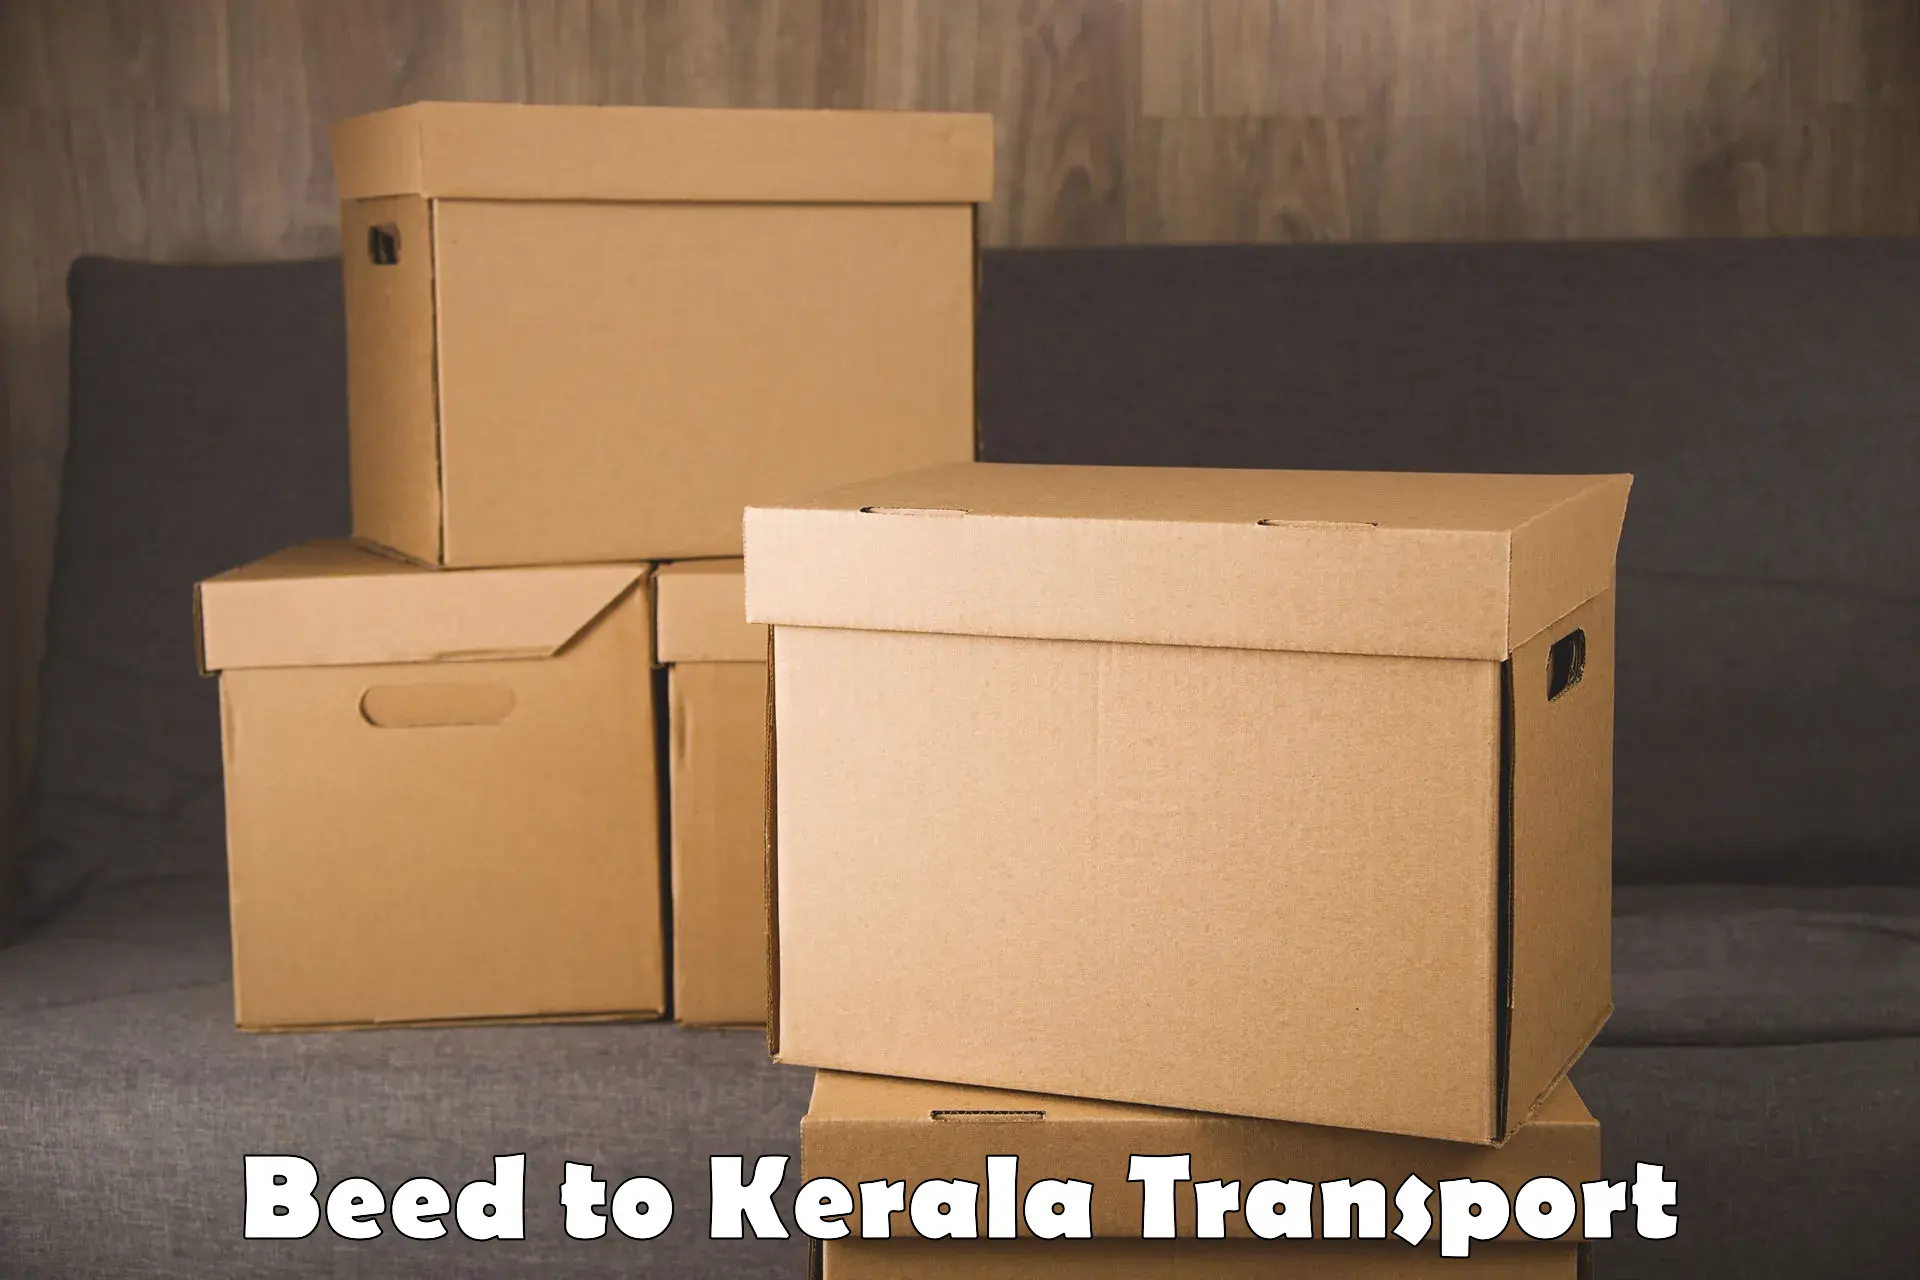 Vehicle parcel service Beed to Kalluvathukkal